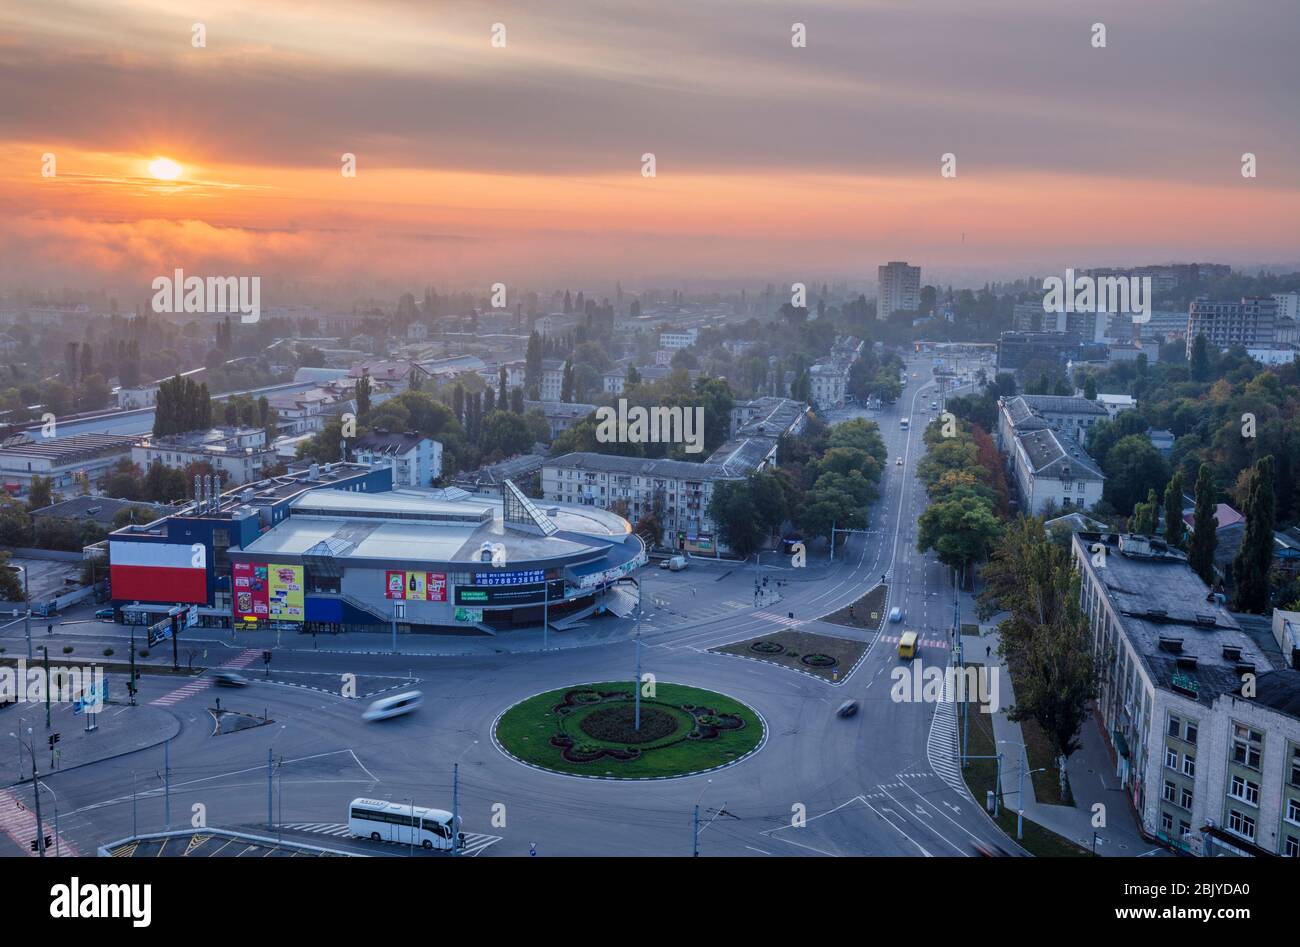 Luftpanorama von Chisinau. Chisinau, Moldawien. Stockfoto